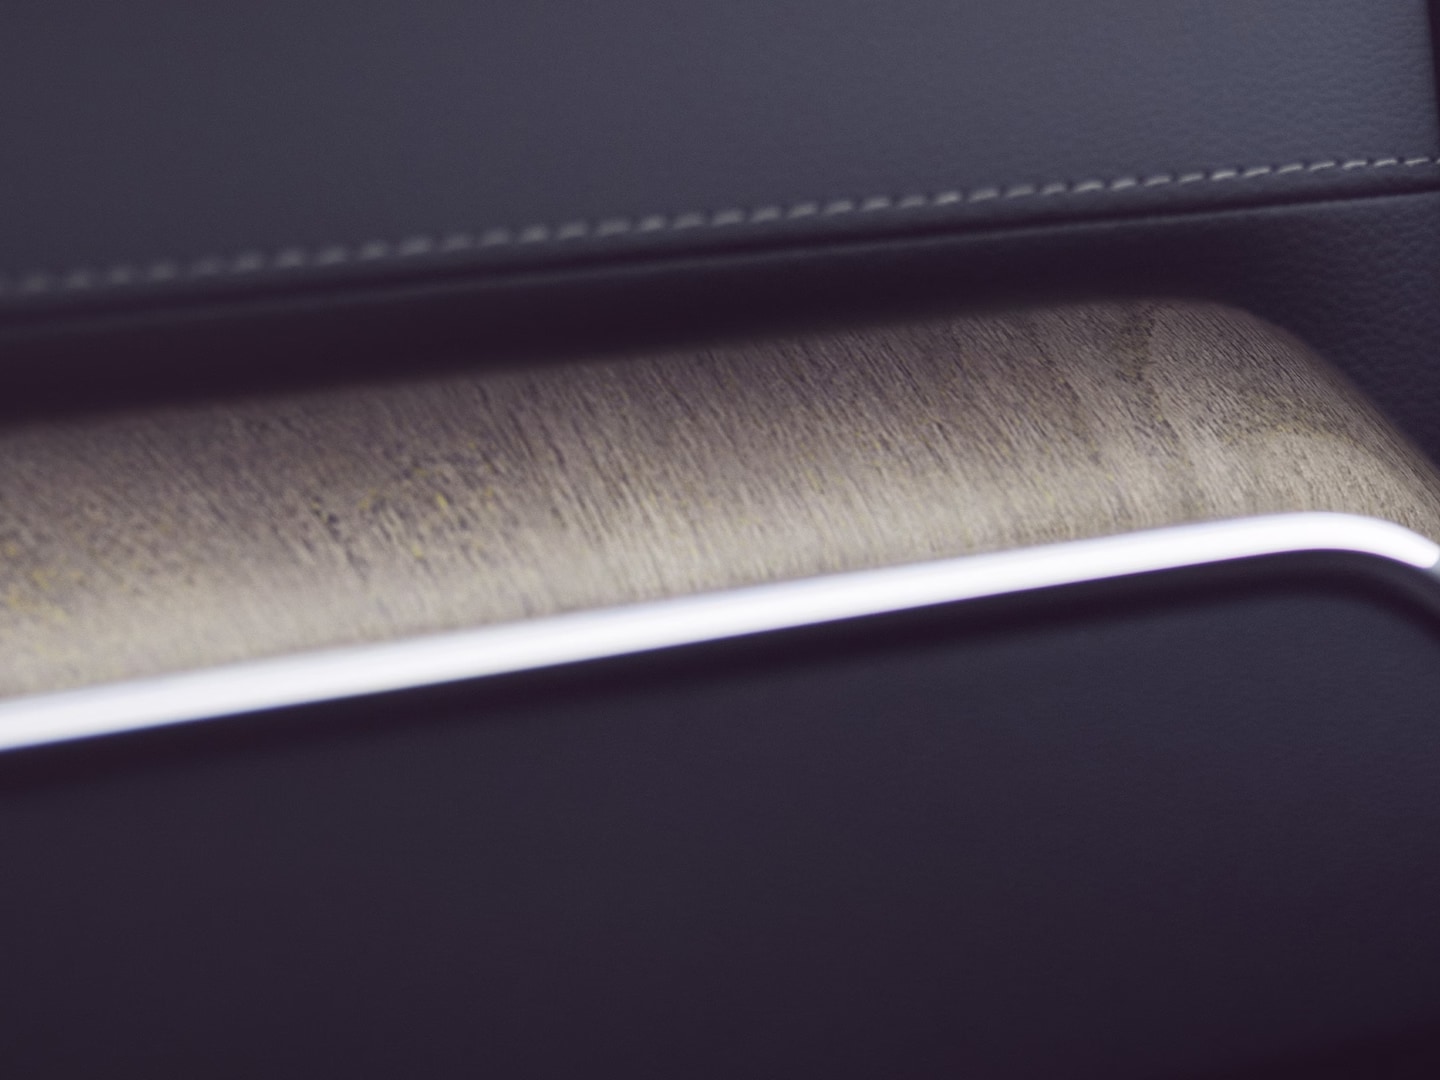 La decoración con incrustaciones en madera reciclada en un Volvo XC60 aporta un toque natural.